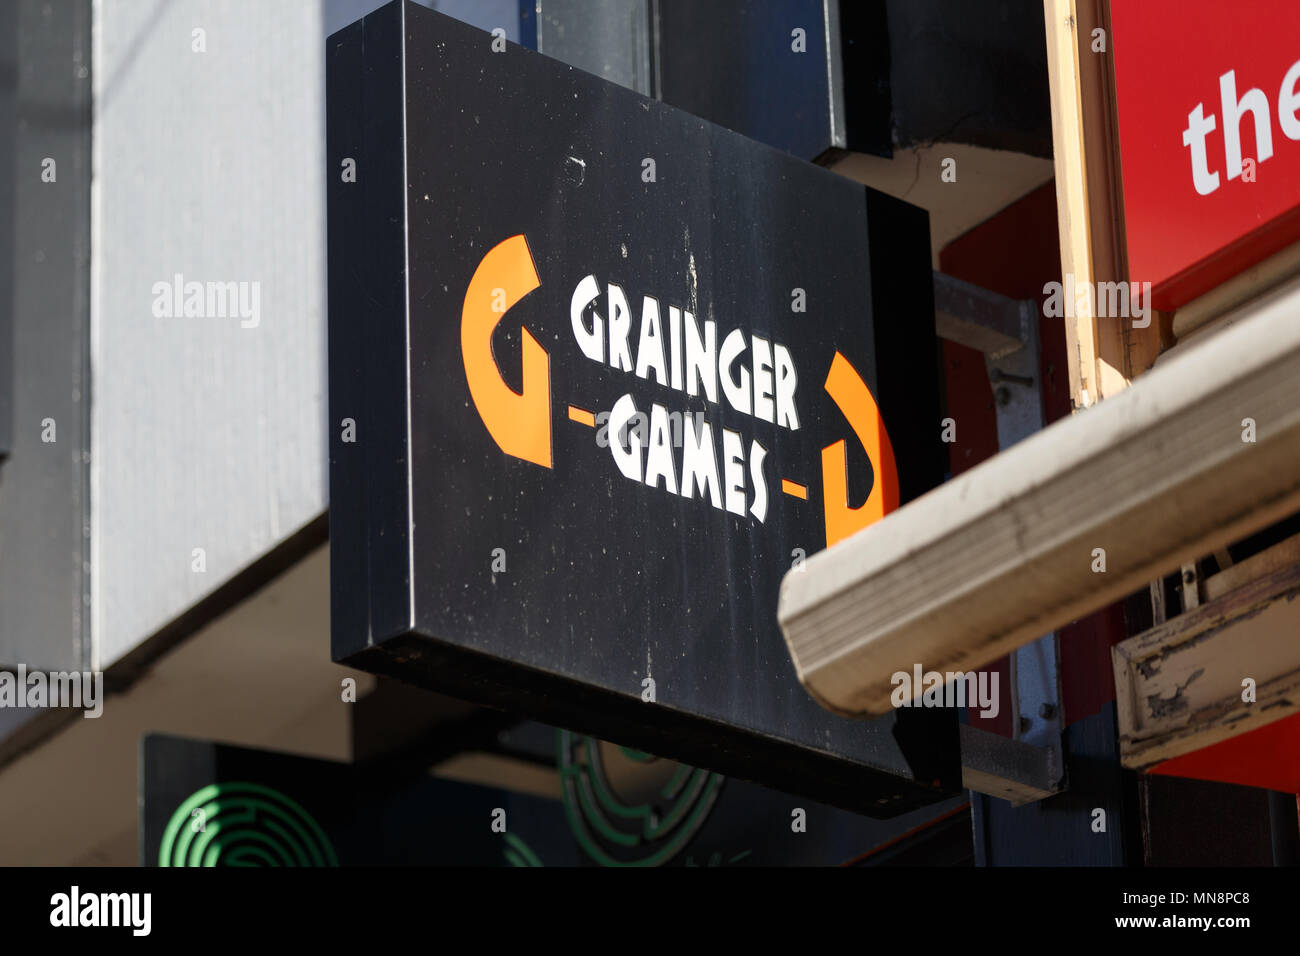 Le panneau pour une succursale de la rue haute de Grainger Jeux dans le Royaume-uni / Grainger Grainger, logo Jeux Jeux Enregistrez-vous. Banque D'Images